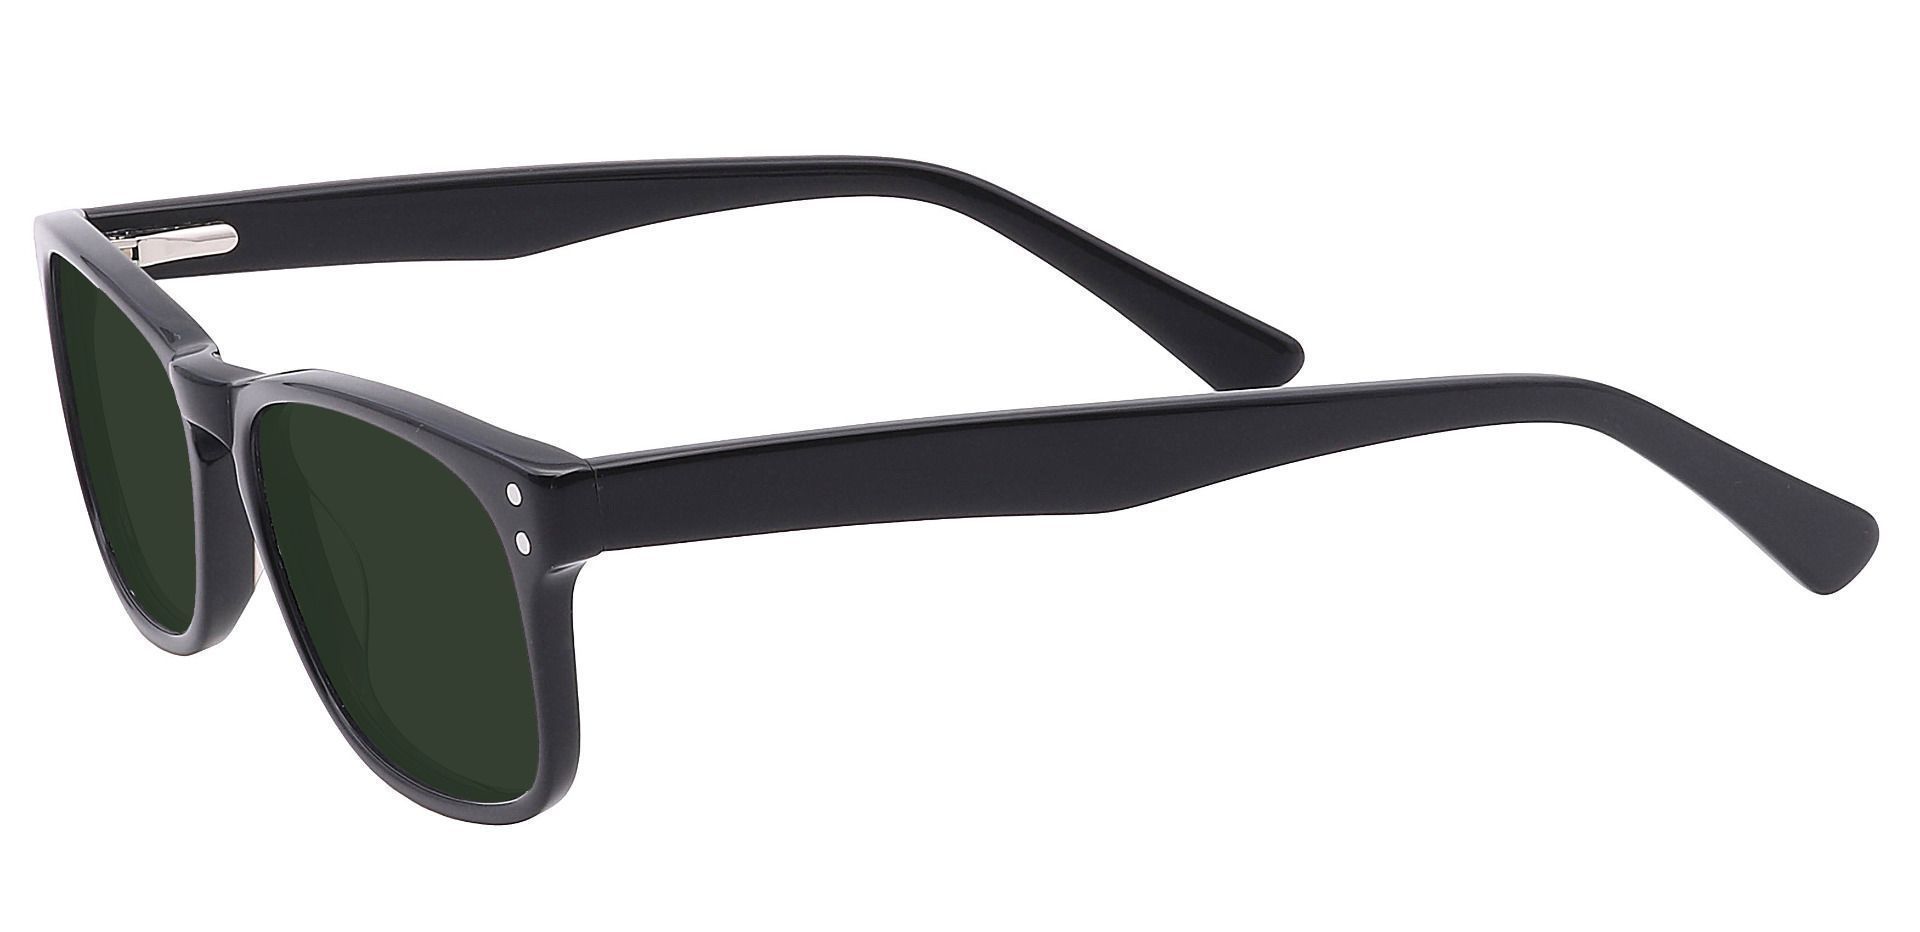 Morris Rectangle Progressive Sunglasses - Black Frame With Green Lenses